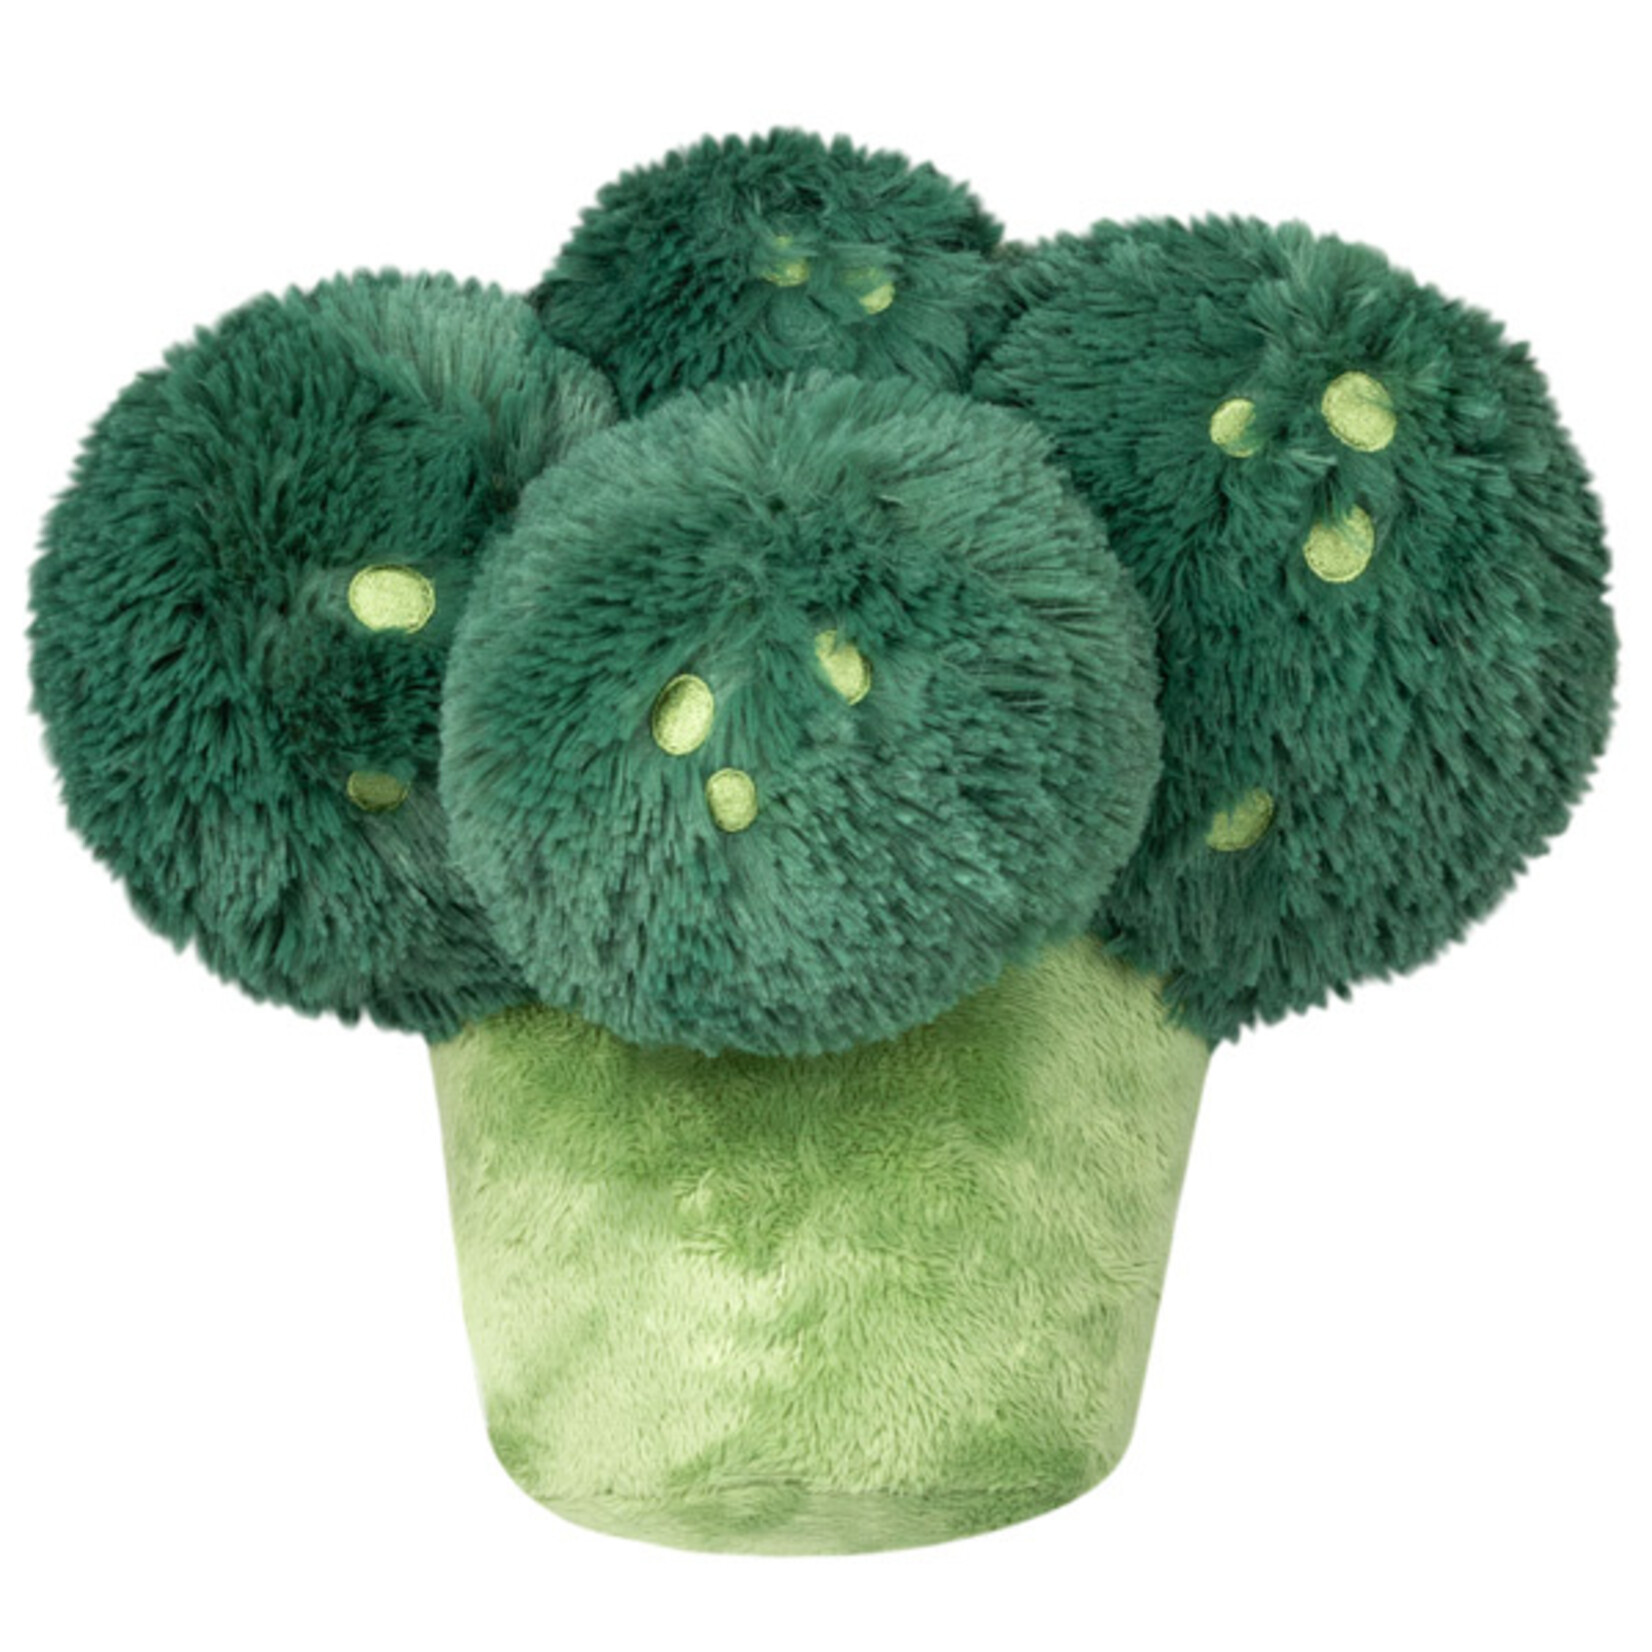 Squishable Broccoli Mini Comfort Food